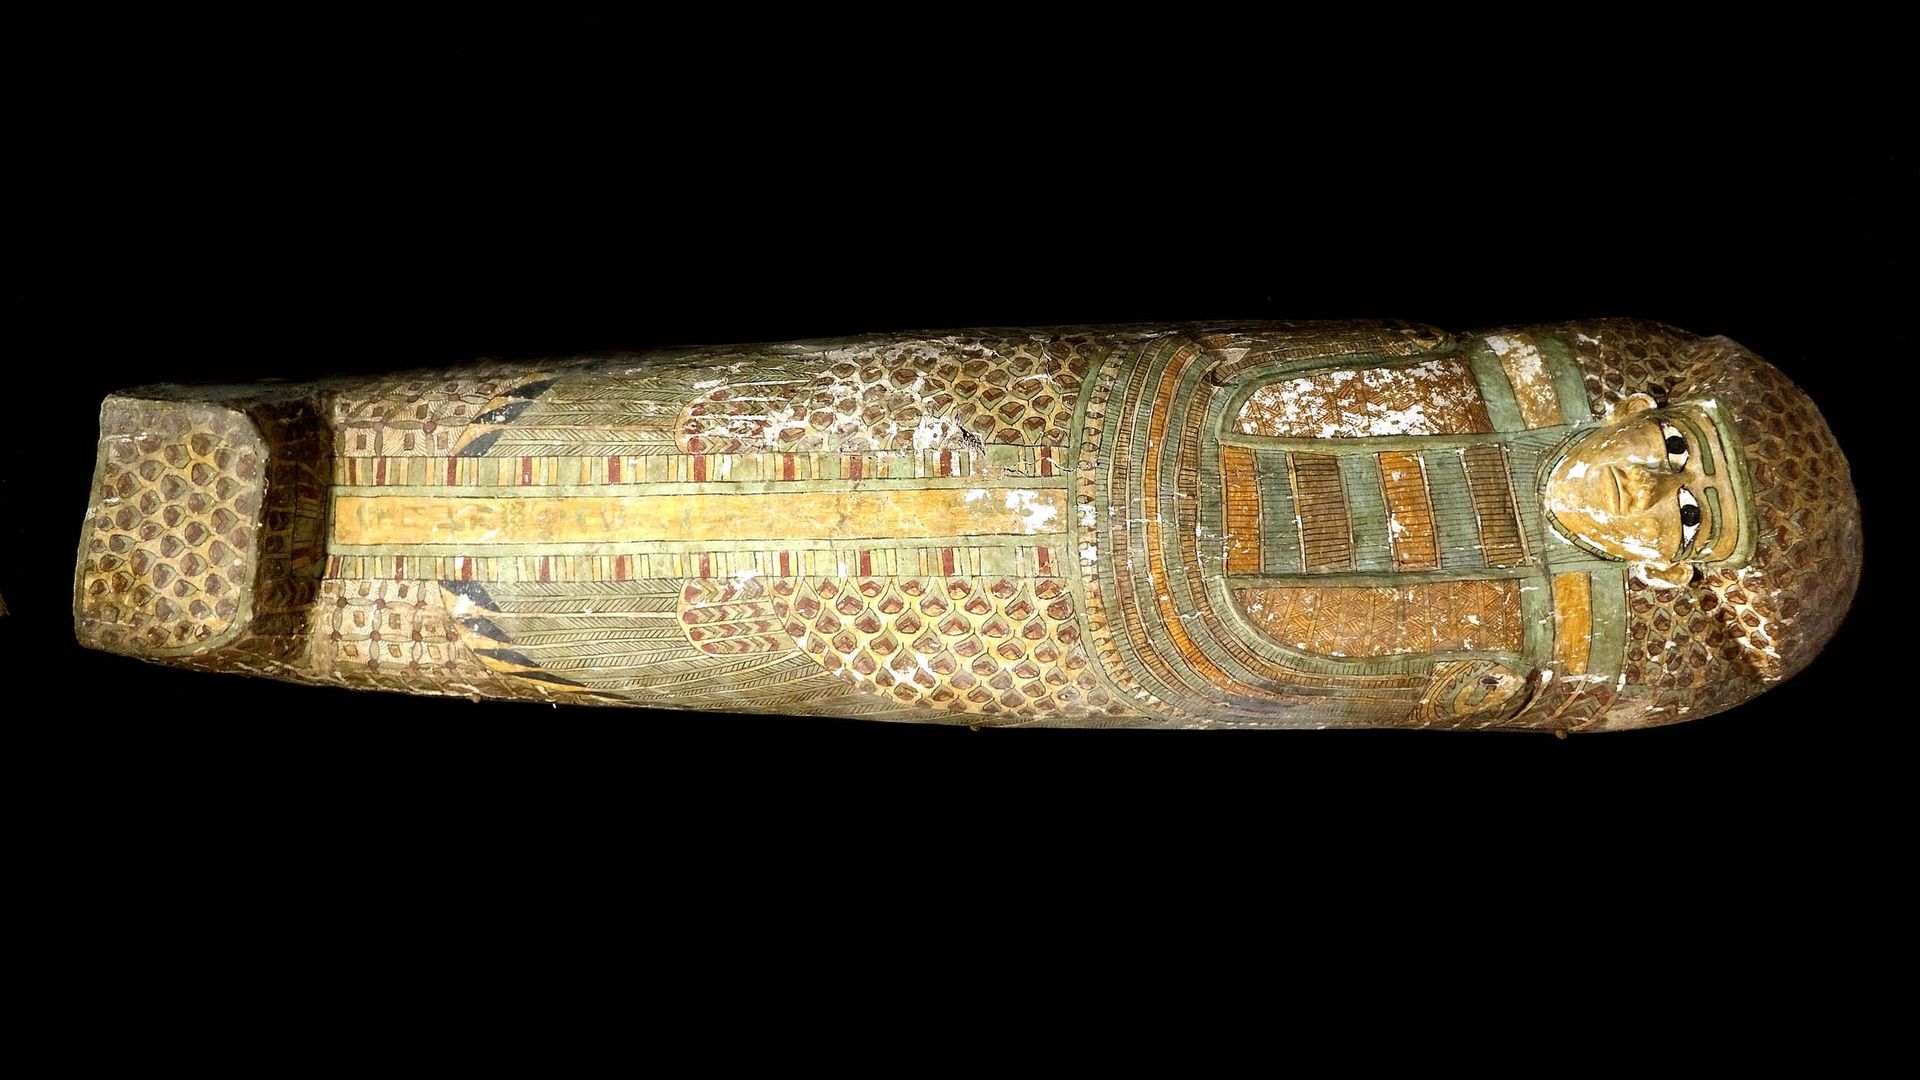 Découverte de la tombe du chef des écuries royales d'un pharaon de la XVIIIe dynastie